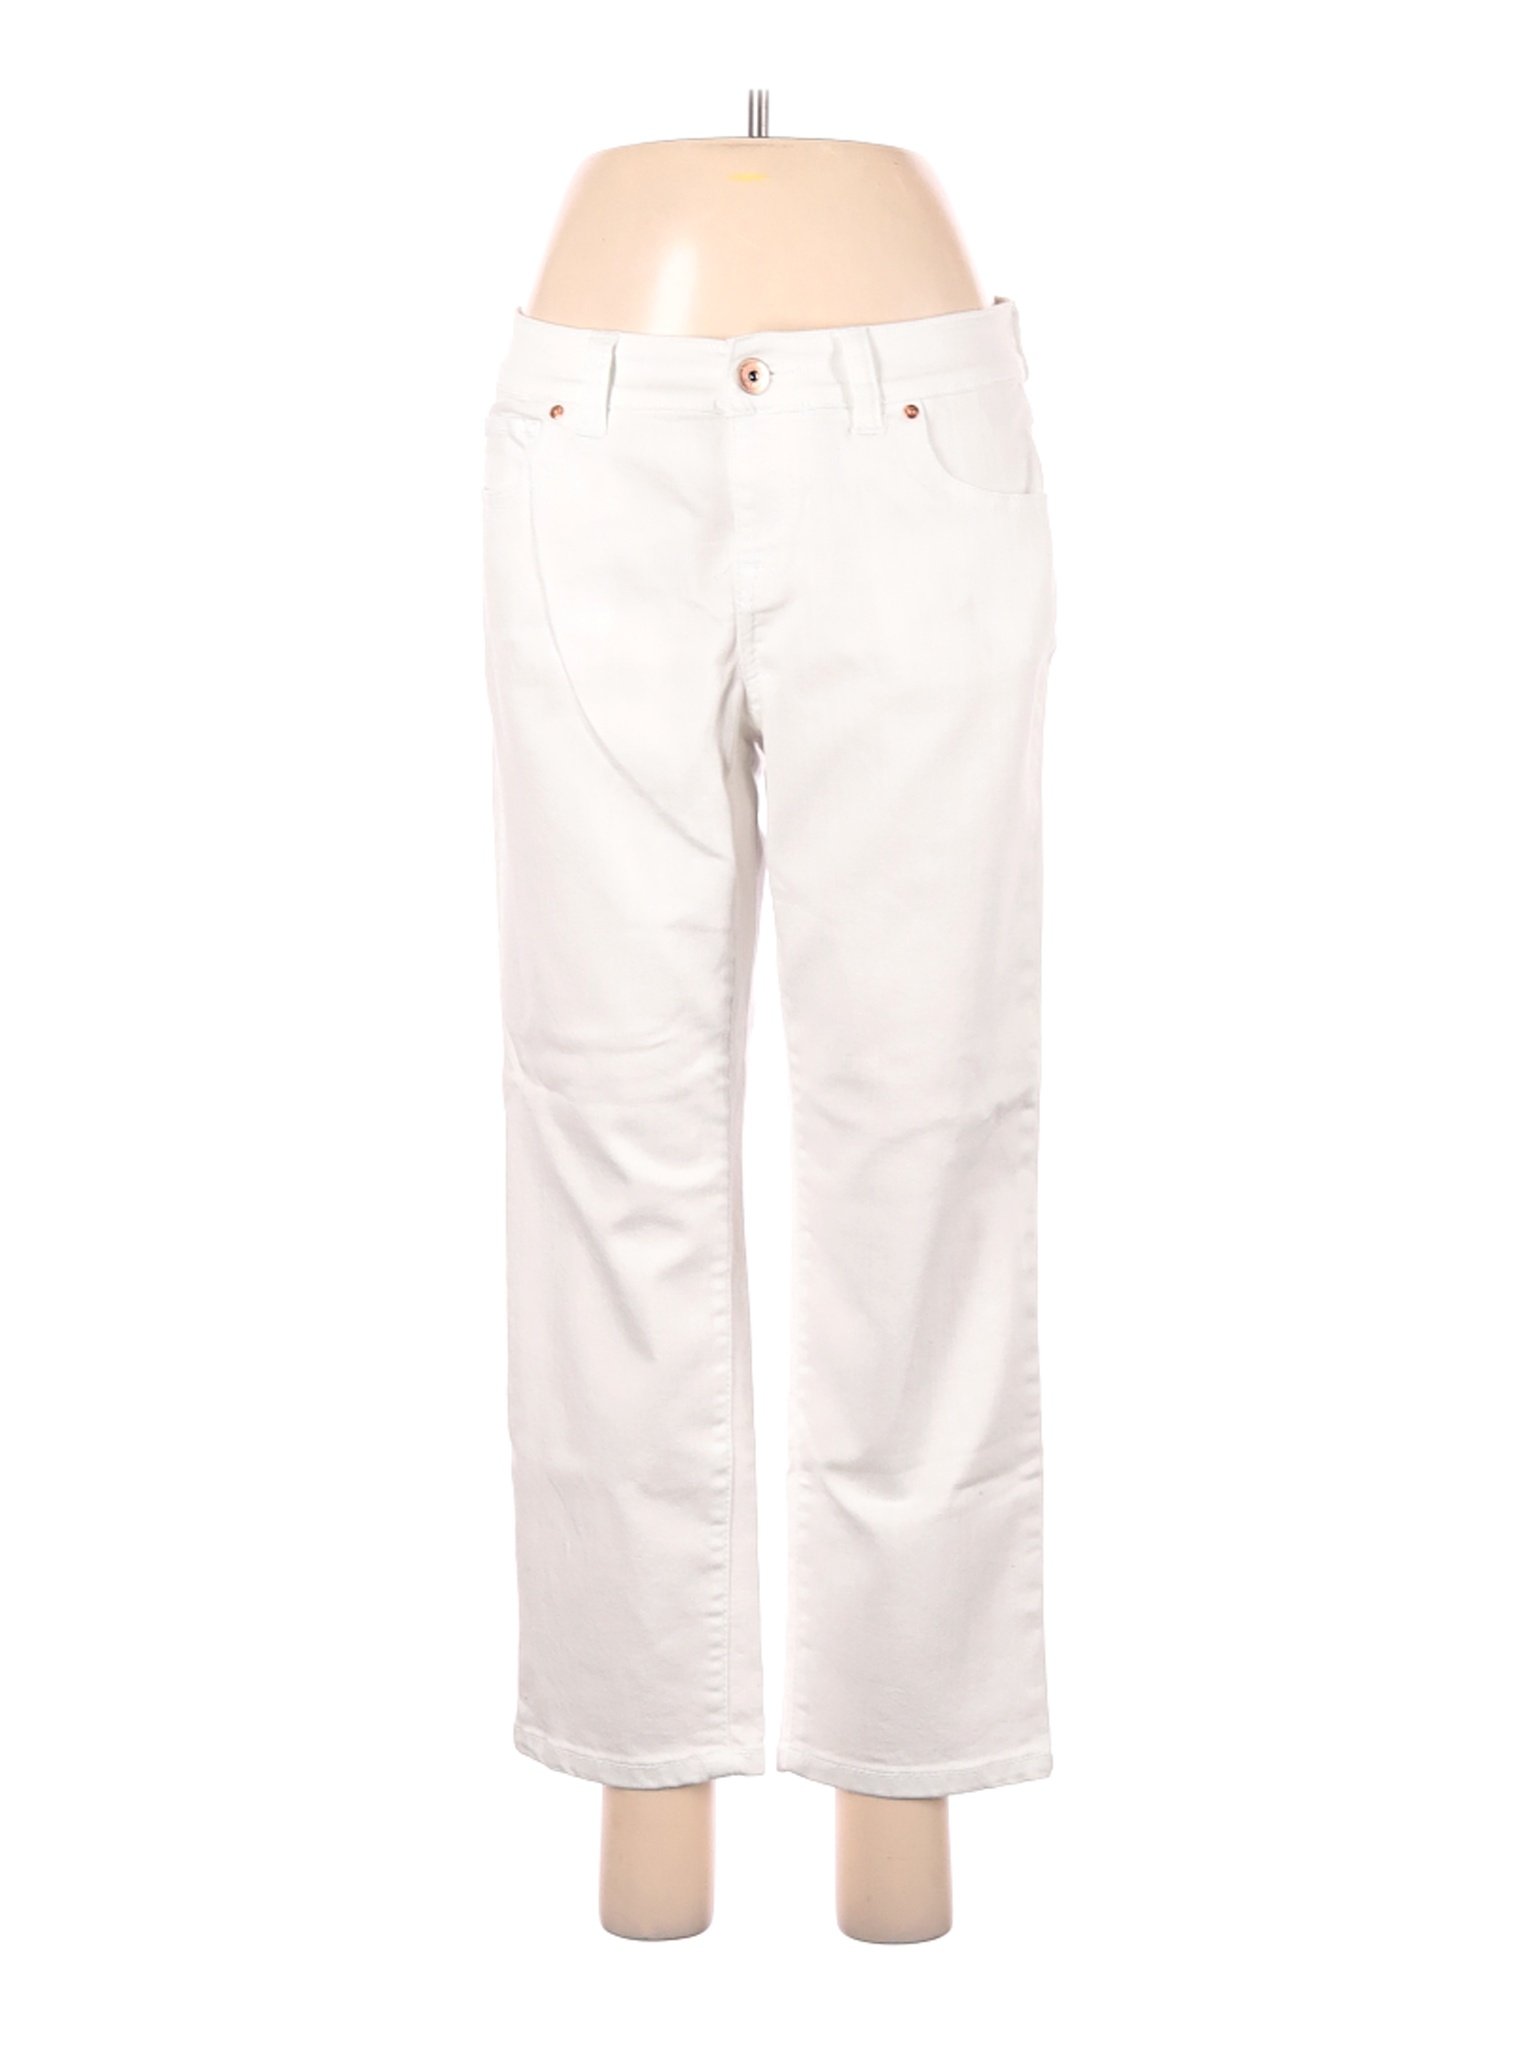 Inc Denim Women White Jeans 8 | eBay